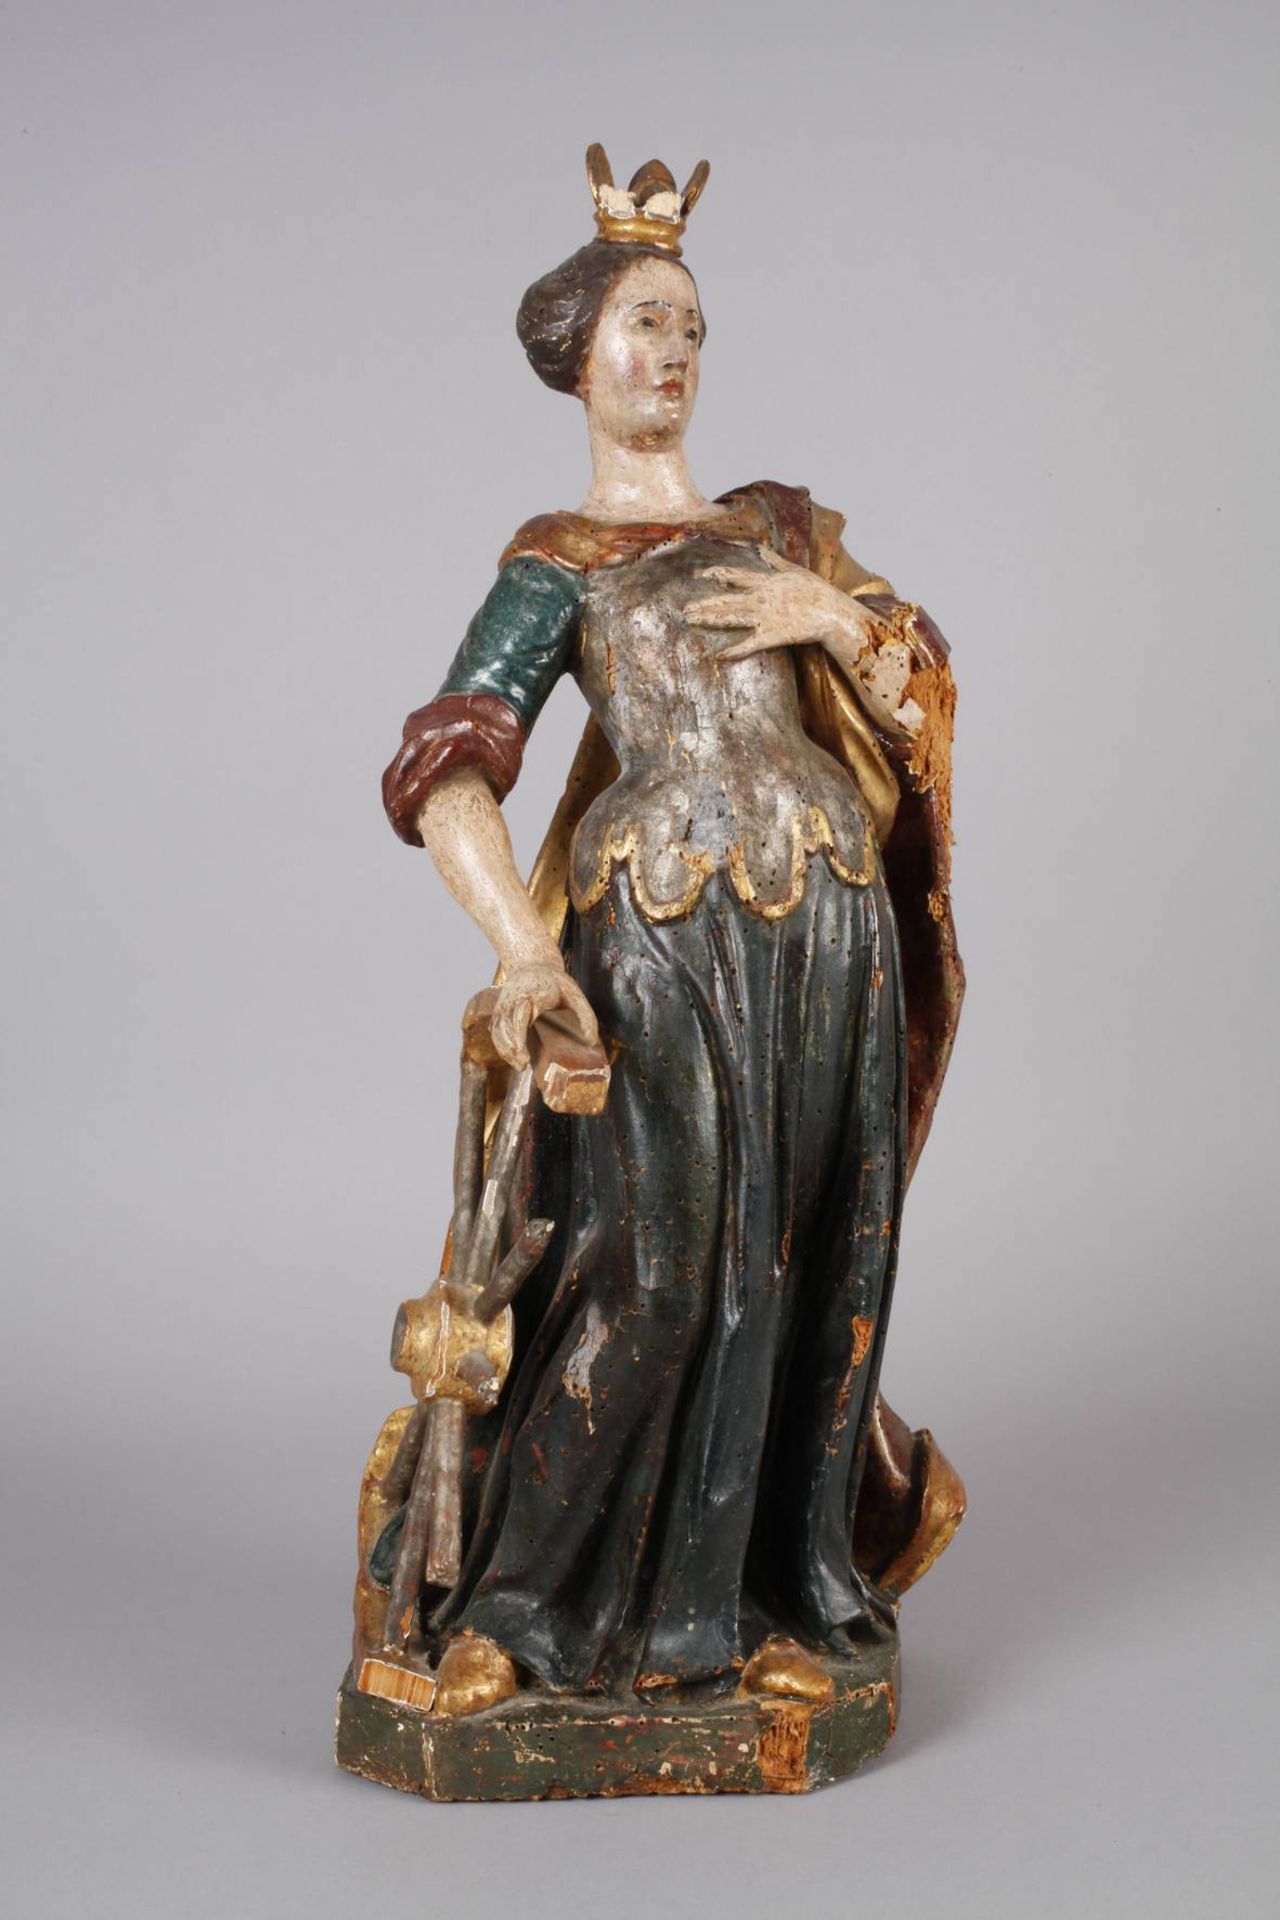 Geschnitzte Heiligenfigur Barock 18. Jh., Holz geschnitzt, kreidegrundiert, mehrfarbig gefasst und - Bild 2 aus 8